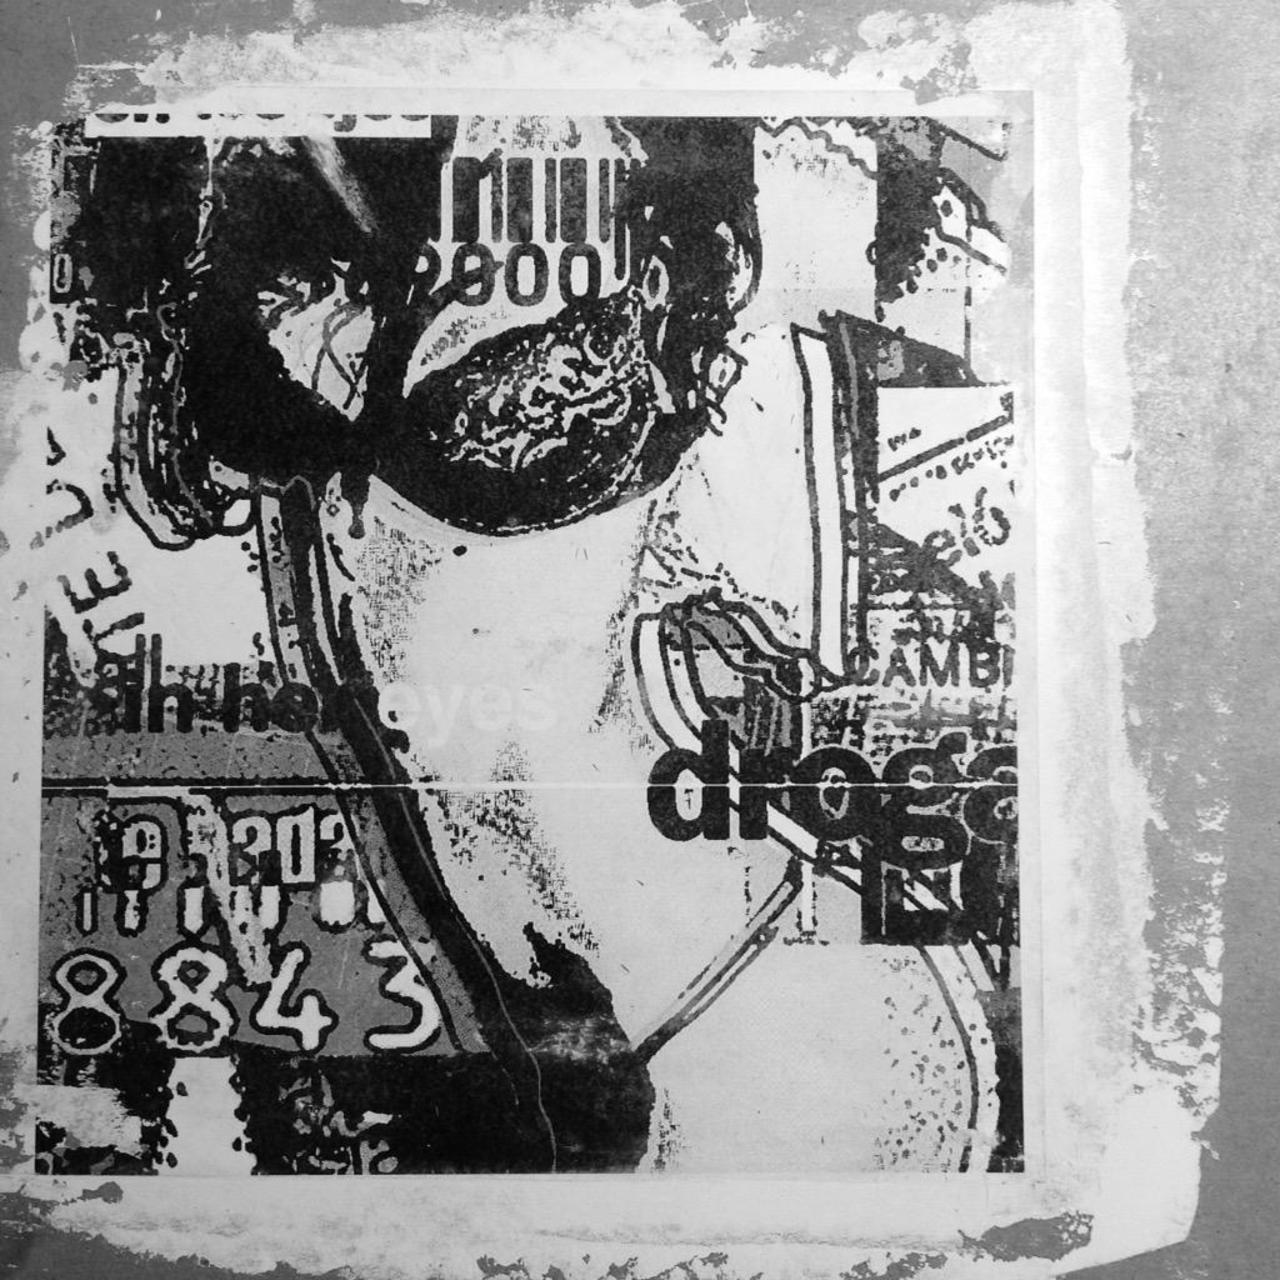 #stickers #stickerart #stickerbomb #punkart #collage #stencil #streetart #punkrock #streetartist #graffiti #urbanart http://t.co/k3aMEcWS1R